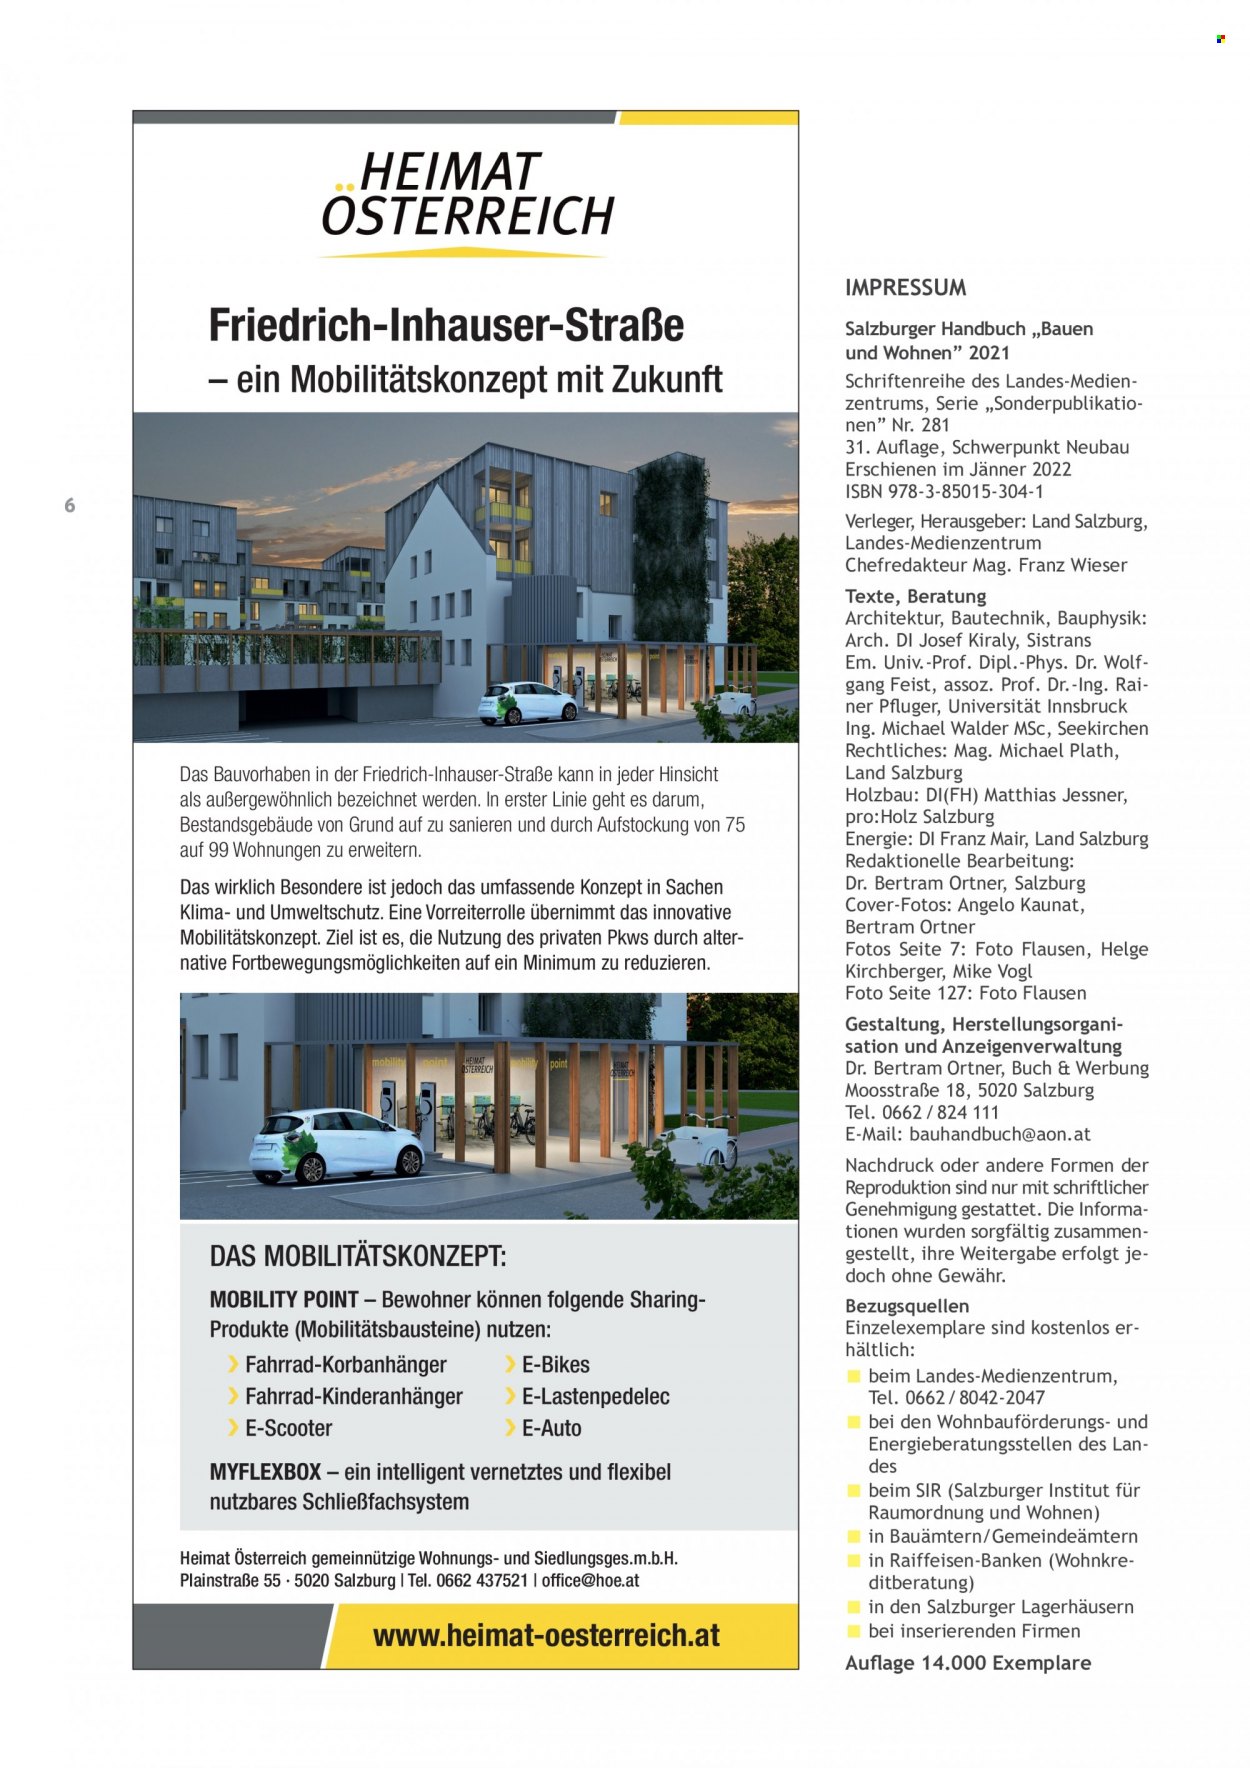 Angebote Salzburger Lagerhaus. Seite 8.